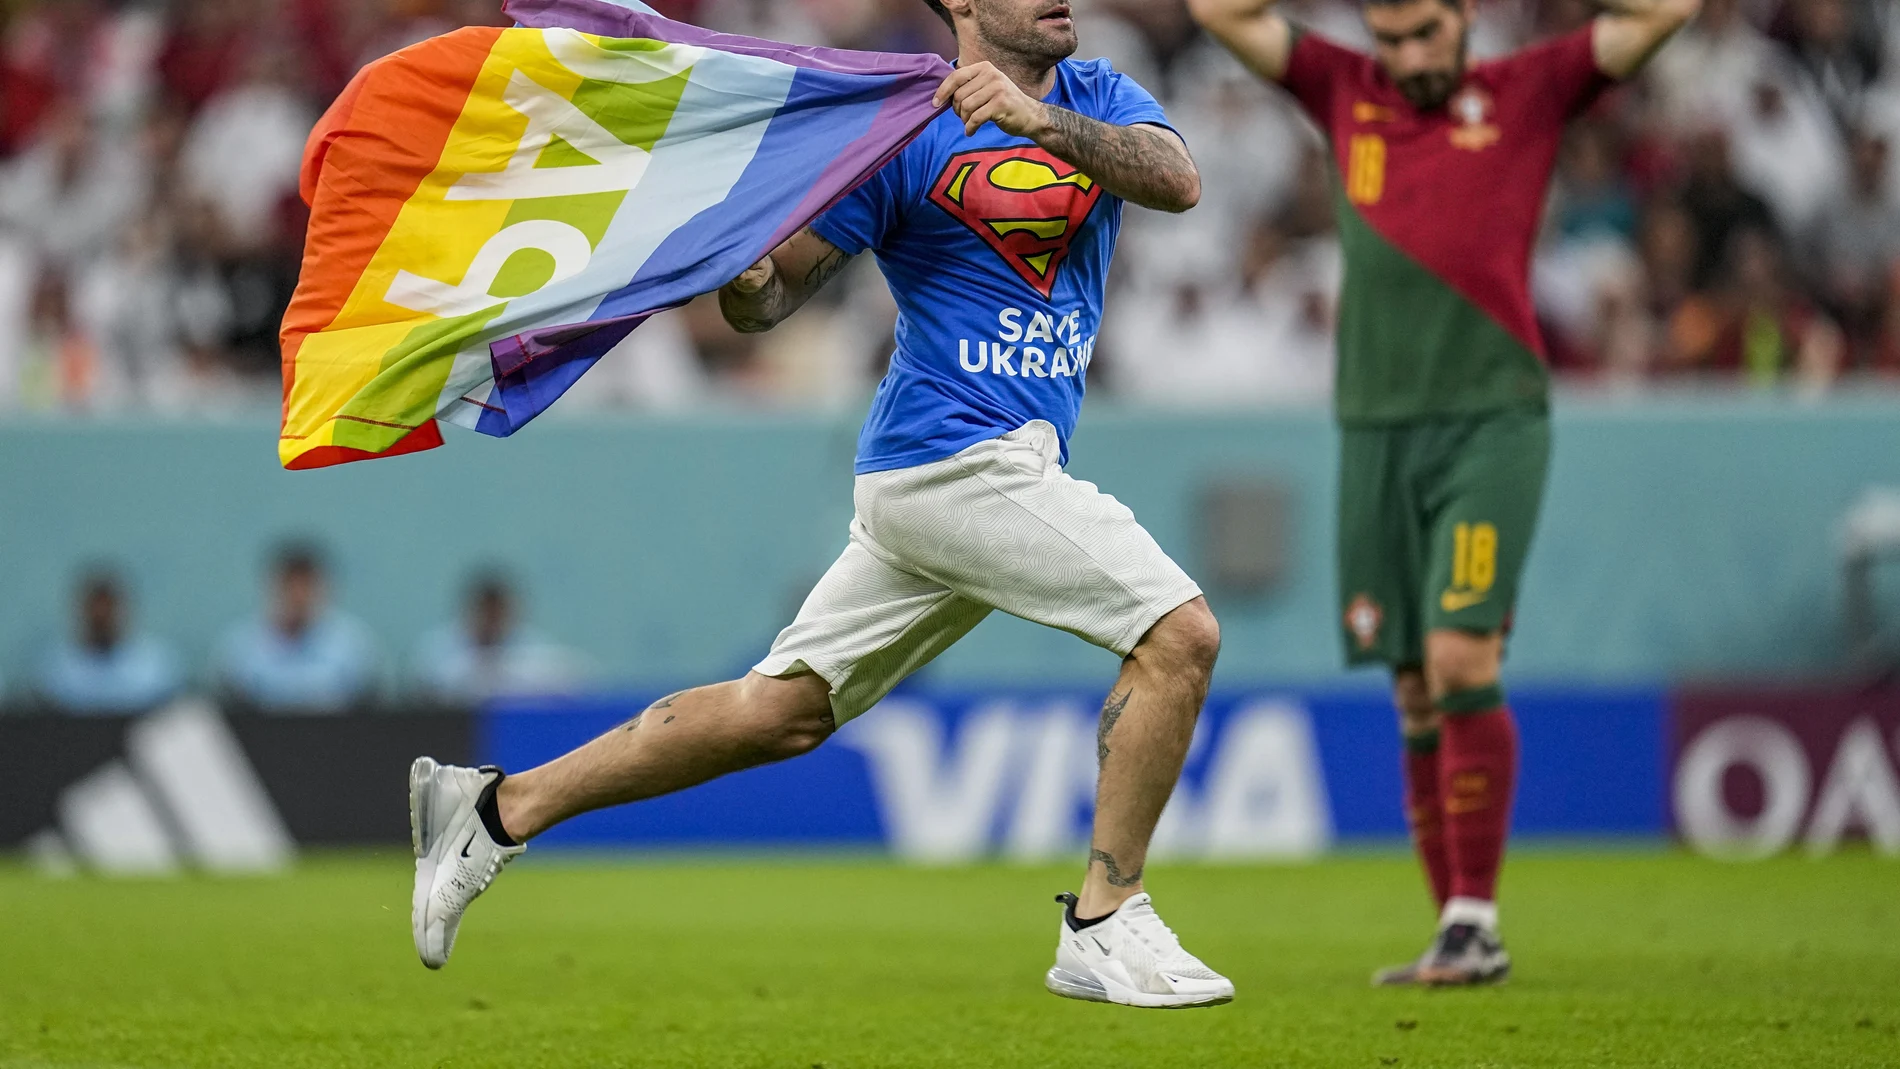 El espontáneo, con camiseta de Supermán y bandera arcoíris